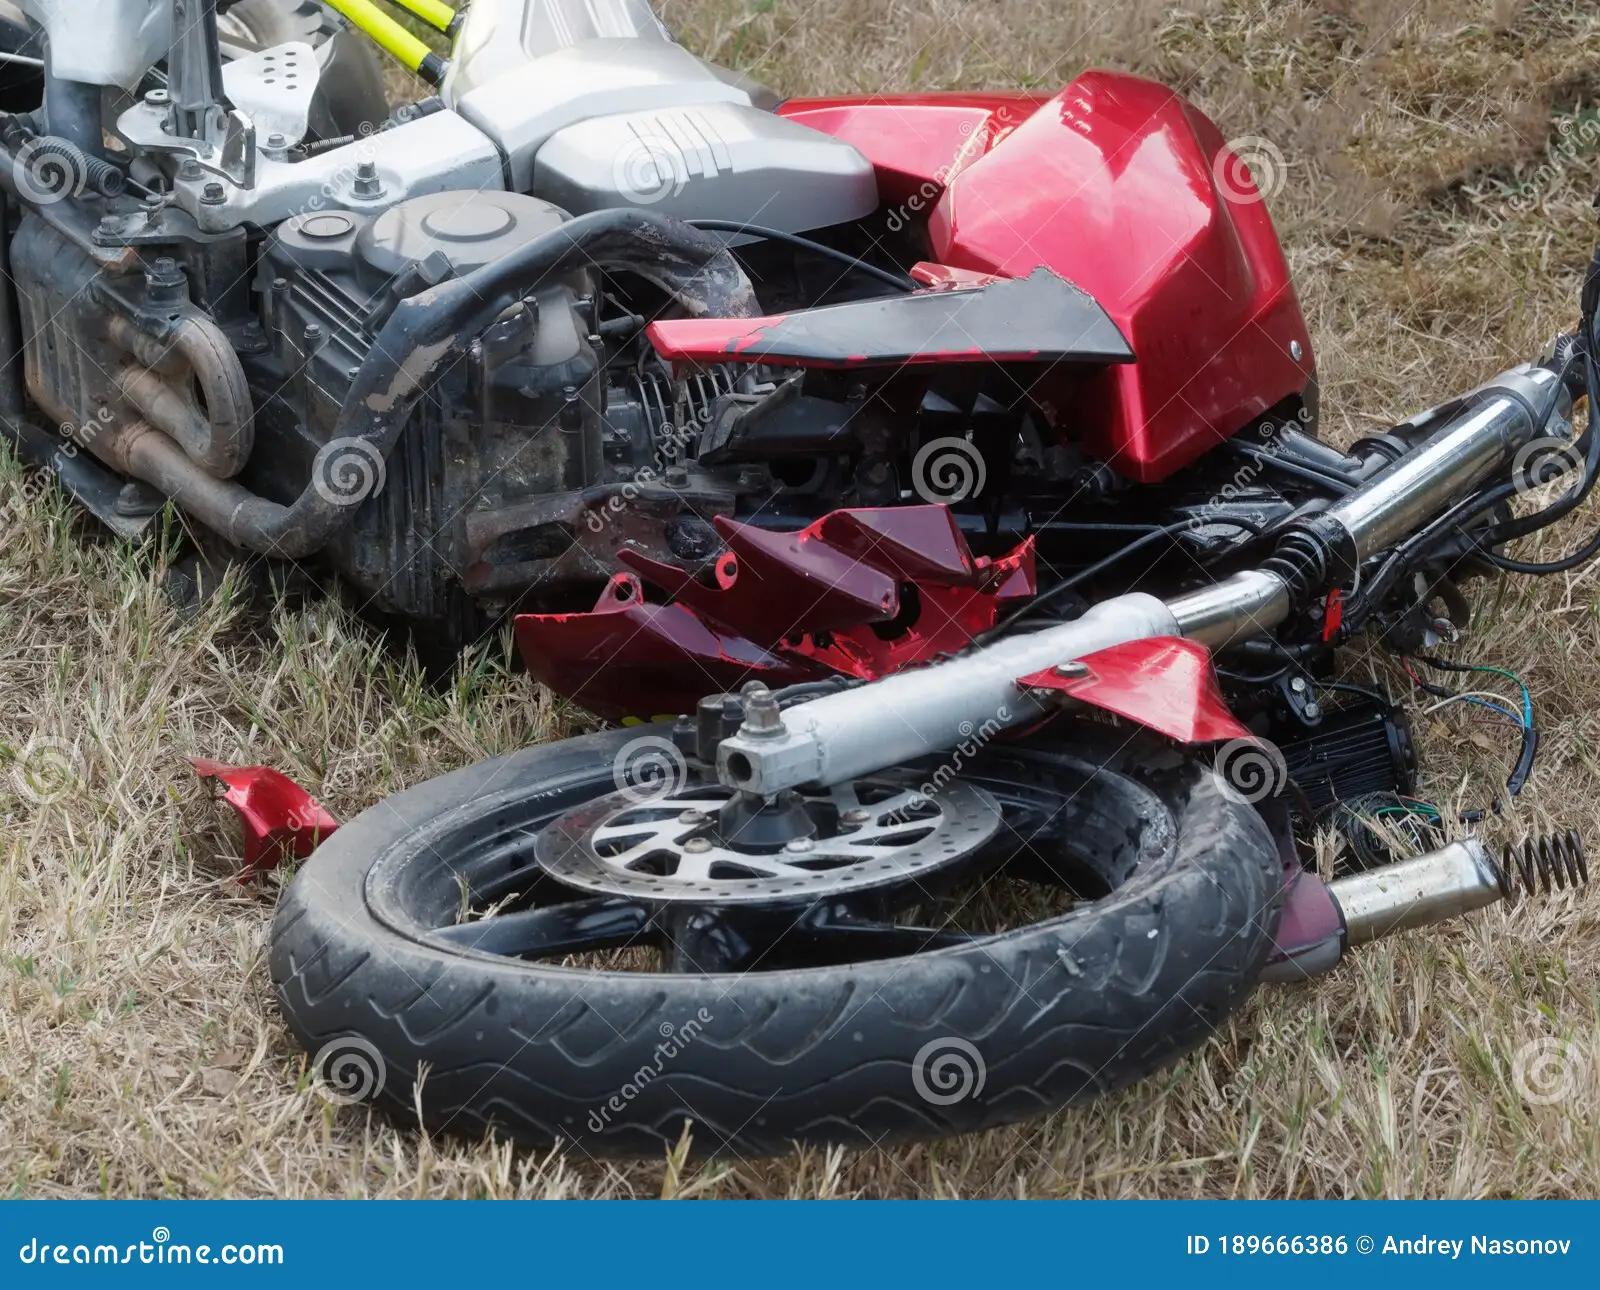 motos destrozadas - Cómo se le dice a un accidente de moto